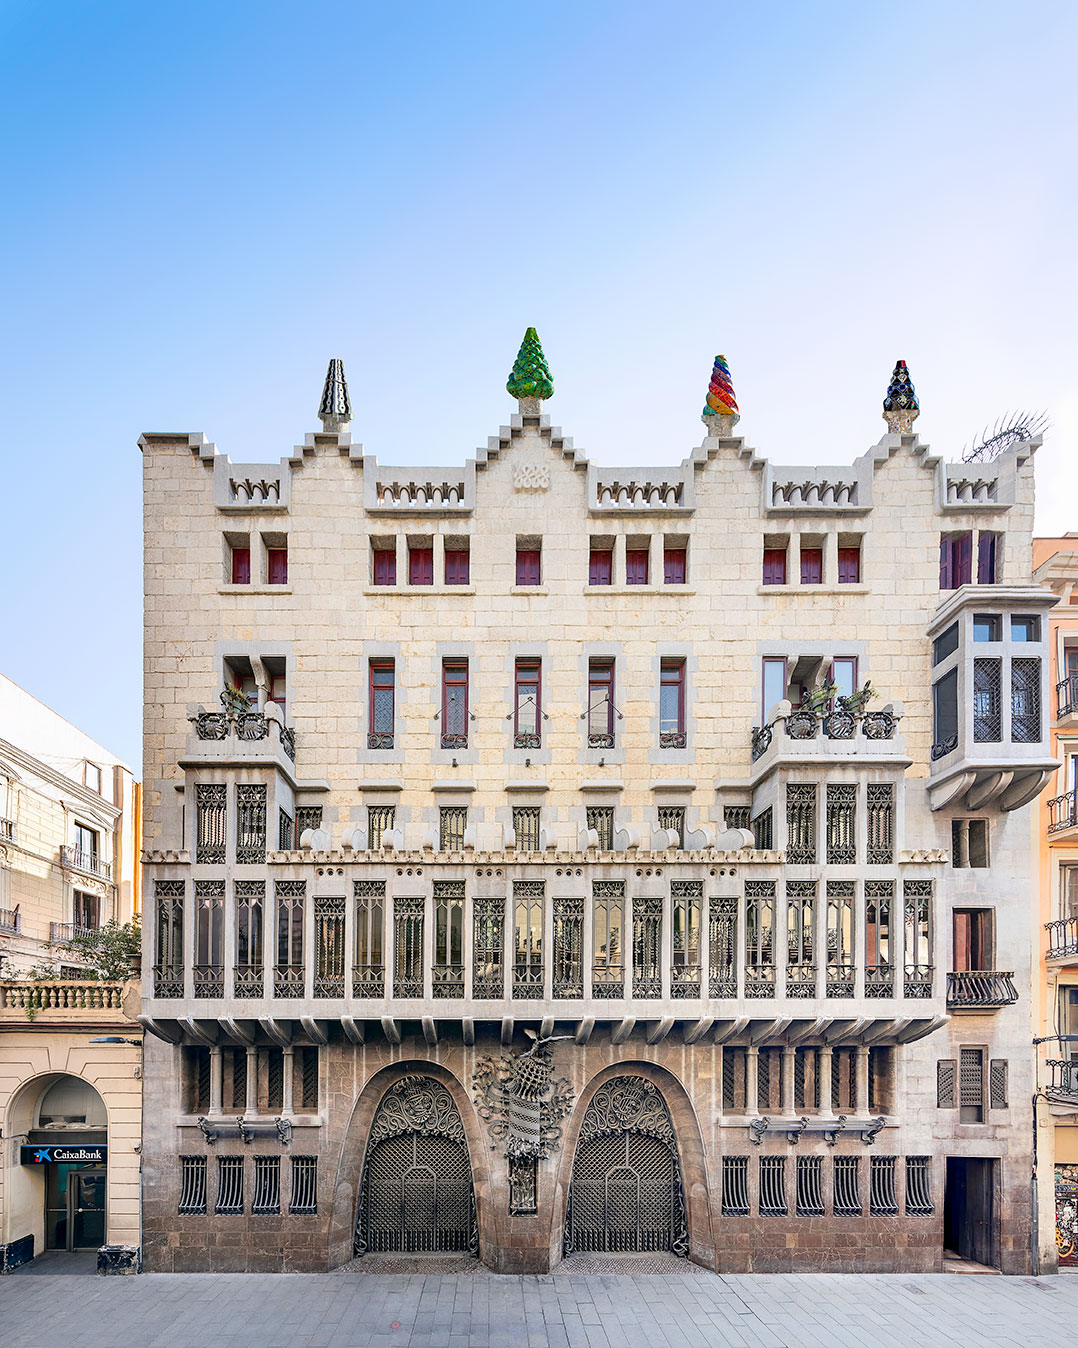 Архитектор гауди и его дома: самые известные достопримечательности барселоны и испании